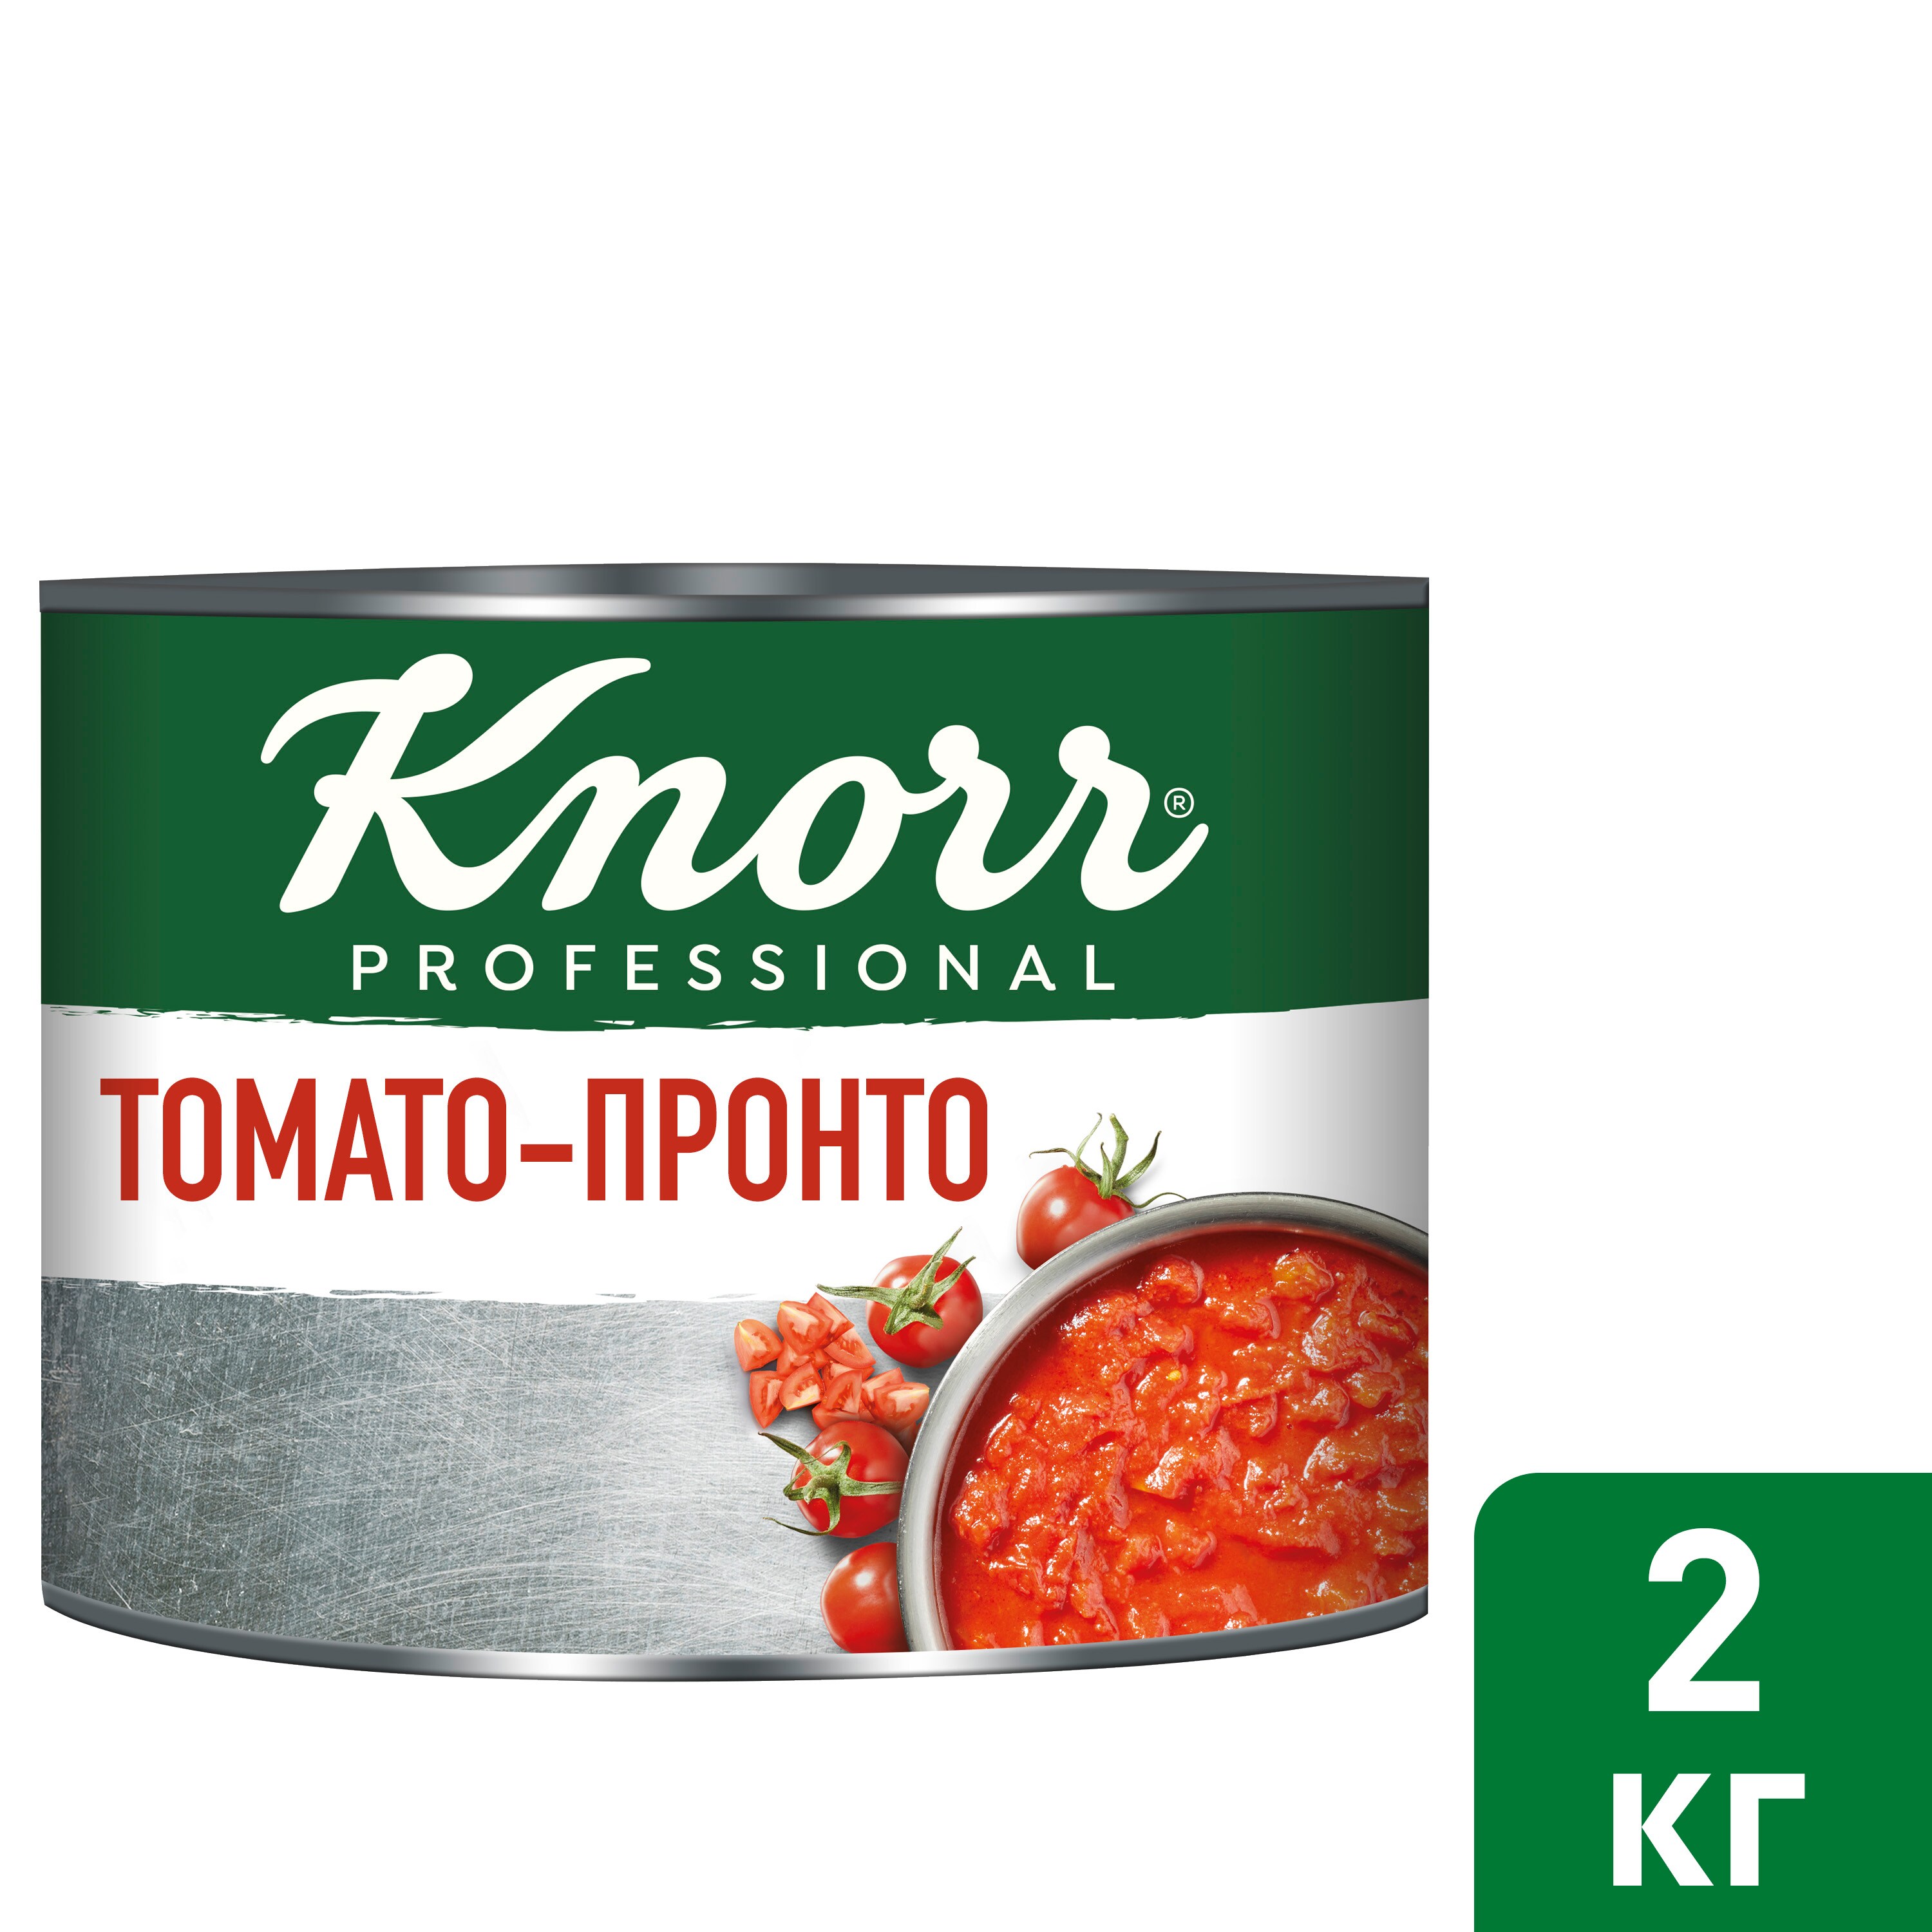 KNORR PROFESSIONAL Консервированные овощи Томато-Пронто (2 кг) - Knorr Professional Консервированные овощи Томато- Пронто (2 кг) - это готовый к использованию томатный соус, приготовленный по классической рецептуре, из сладких и сочных итальянских грунтовых томатов, собранных на пике зрелости.